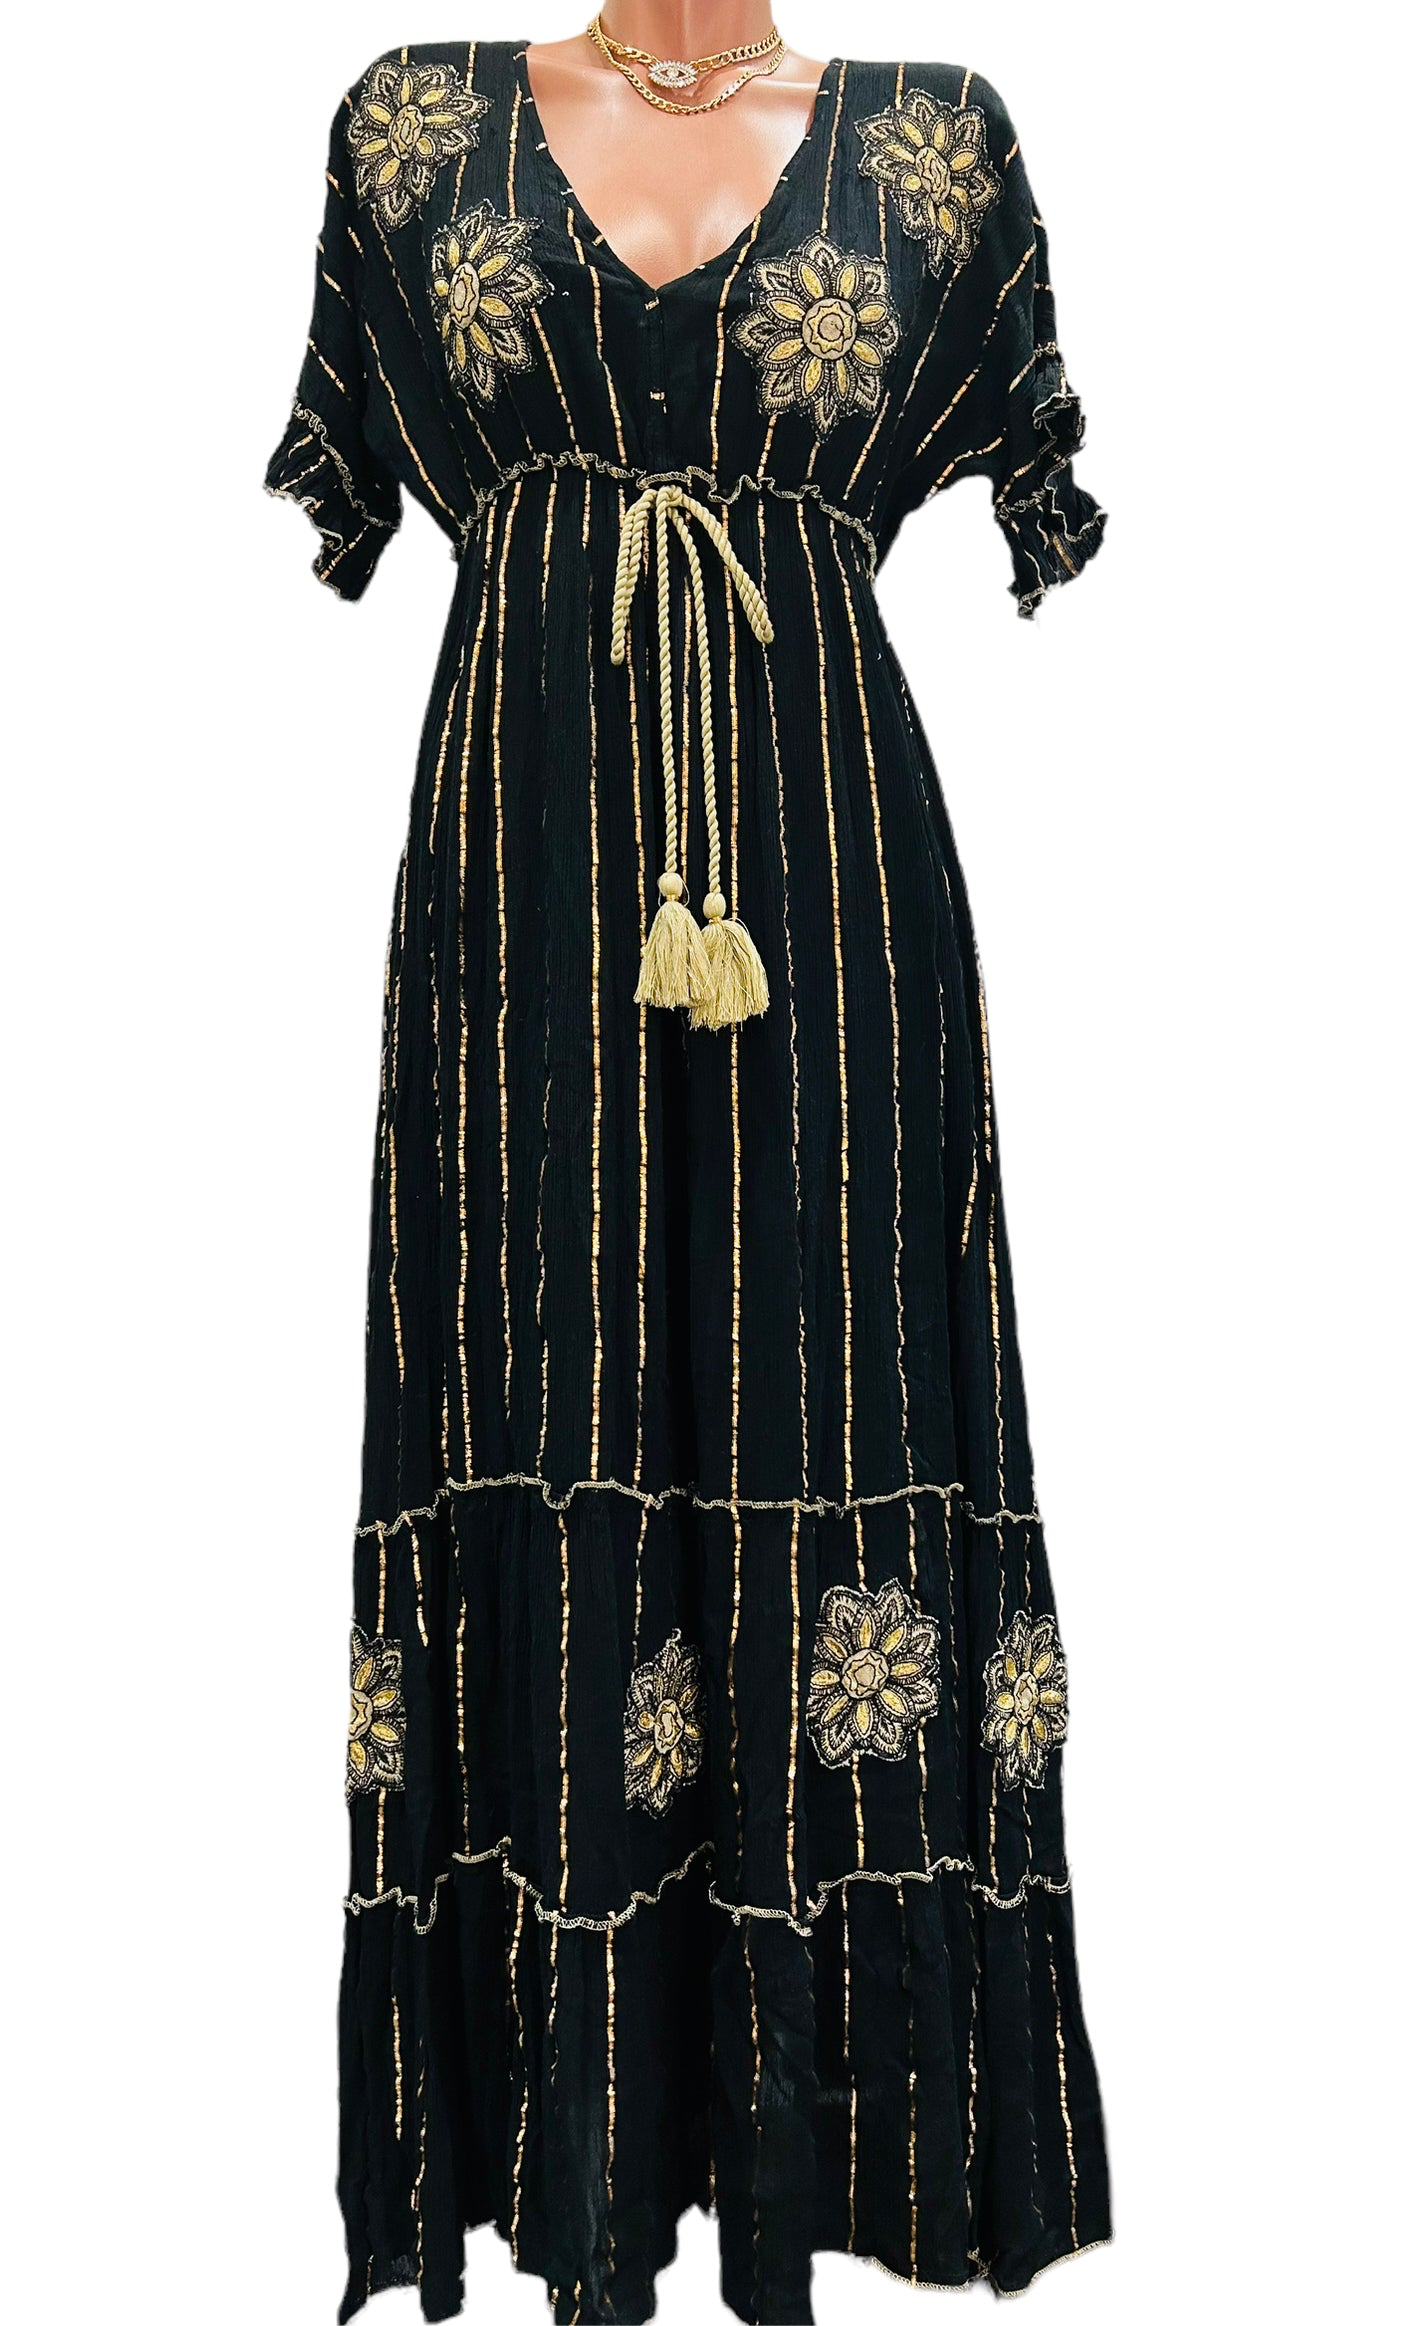 Sarah Black Long Dress.